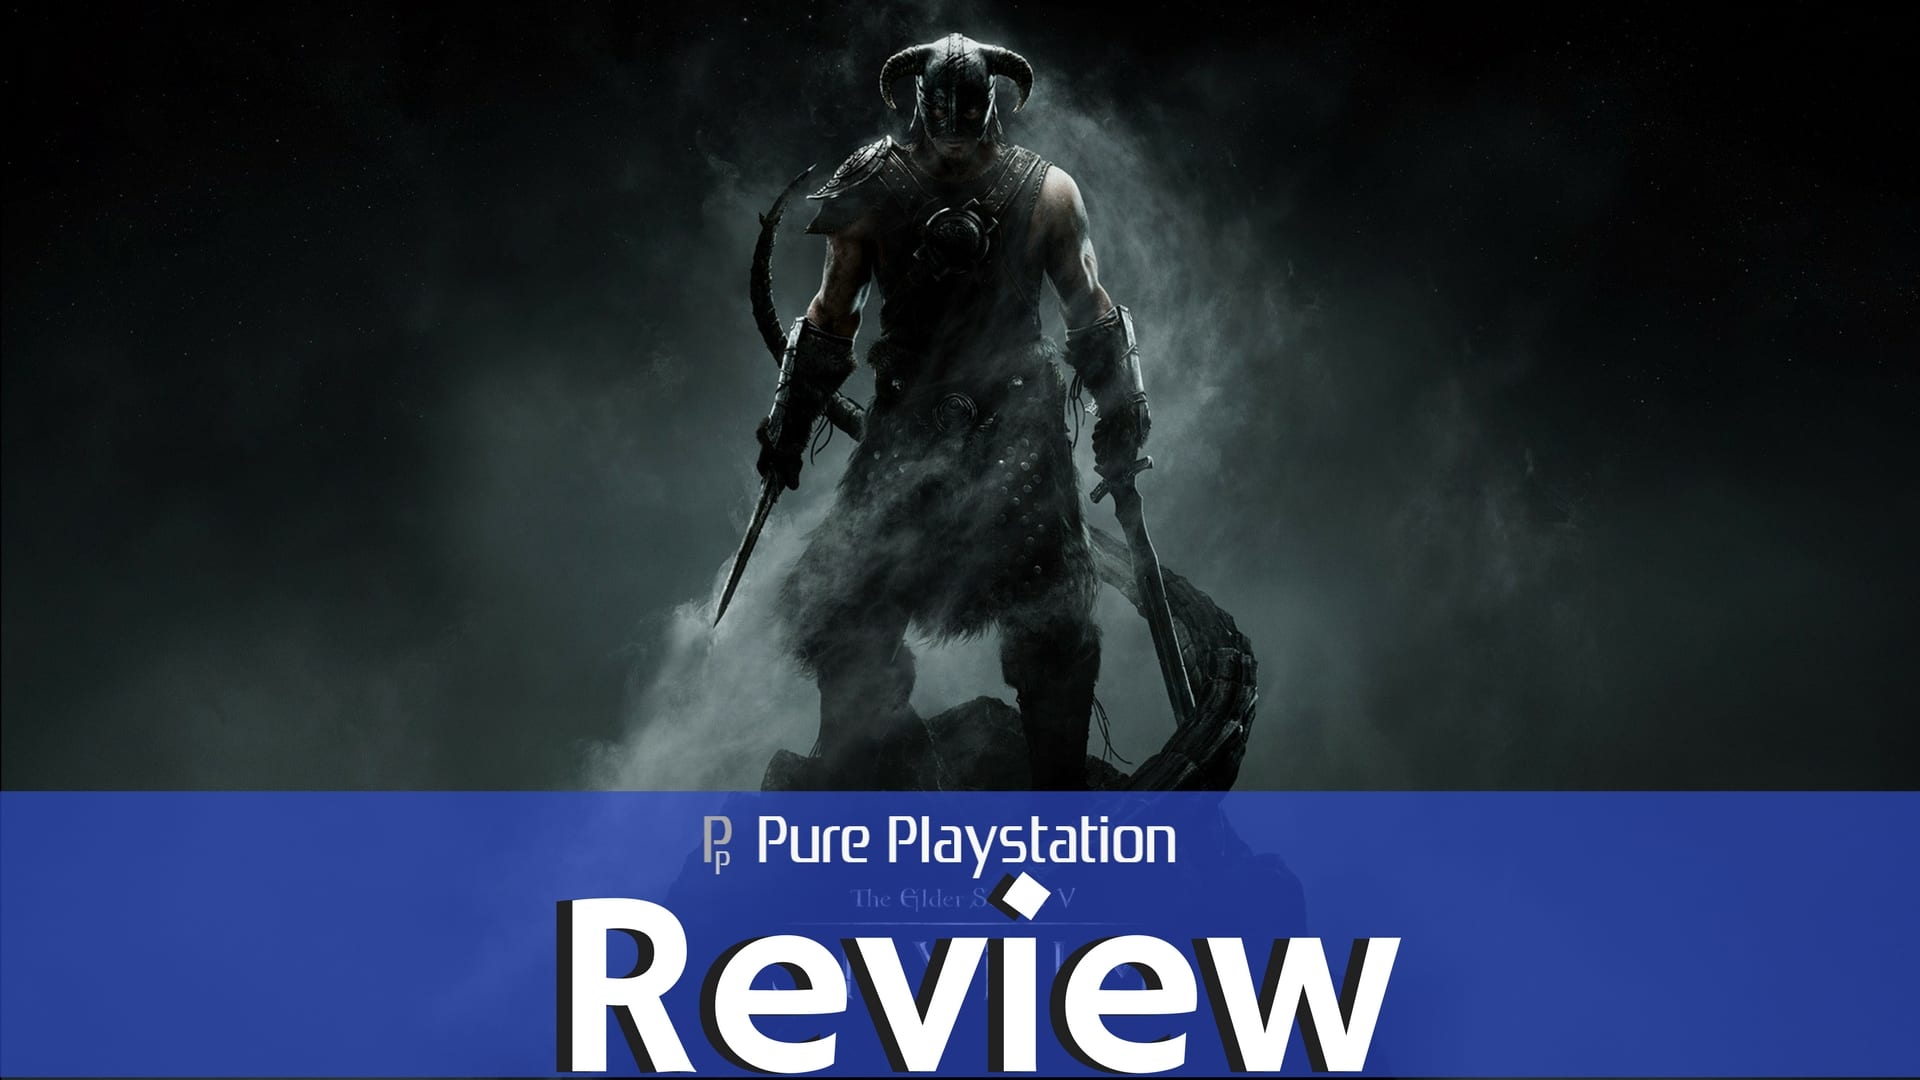 Review: Skyrim VR - PS4/PSVR